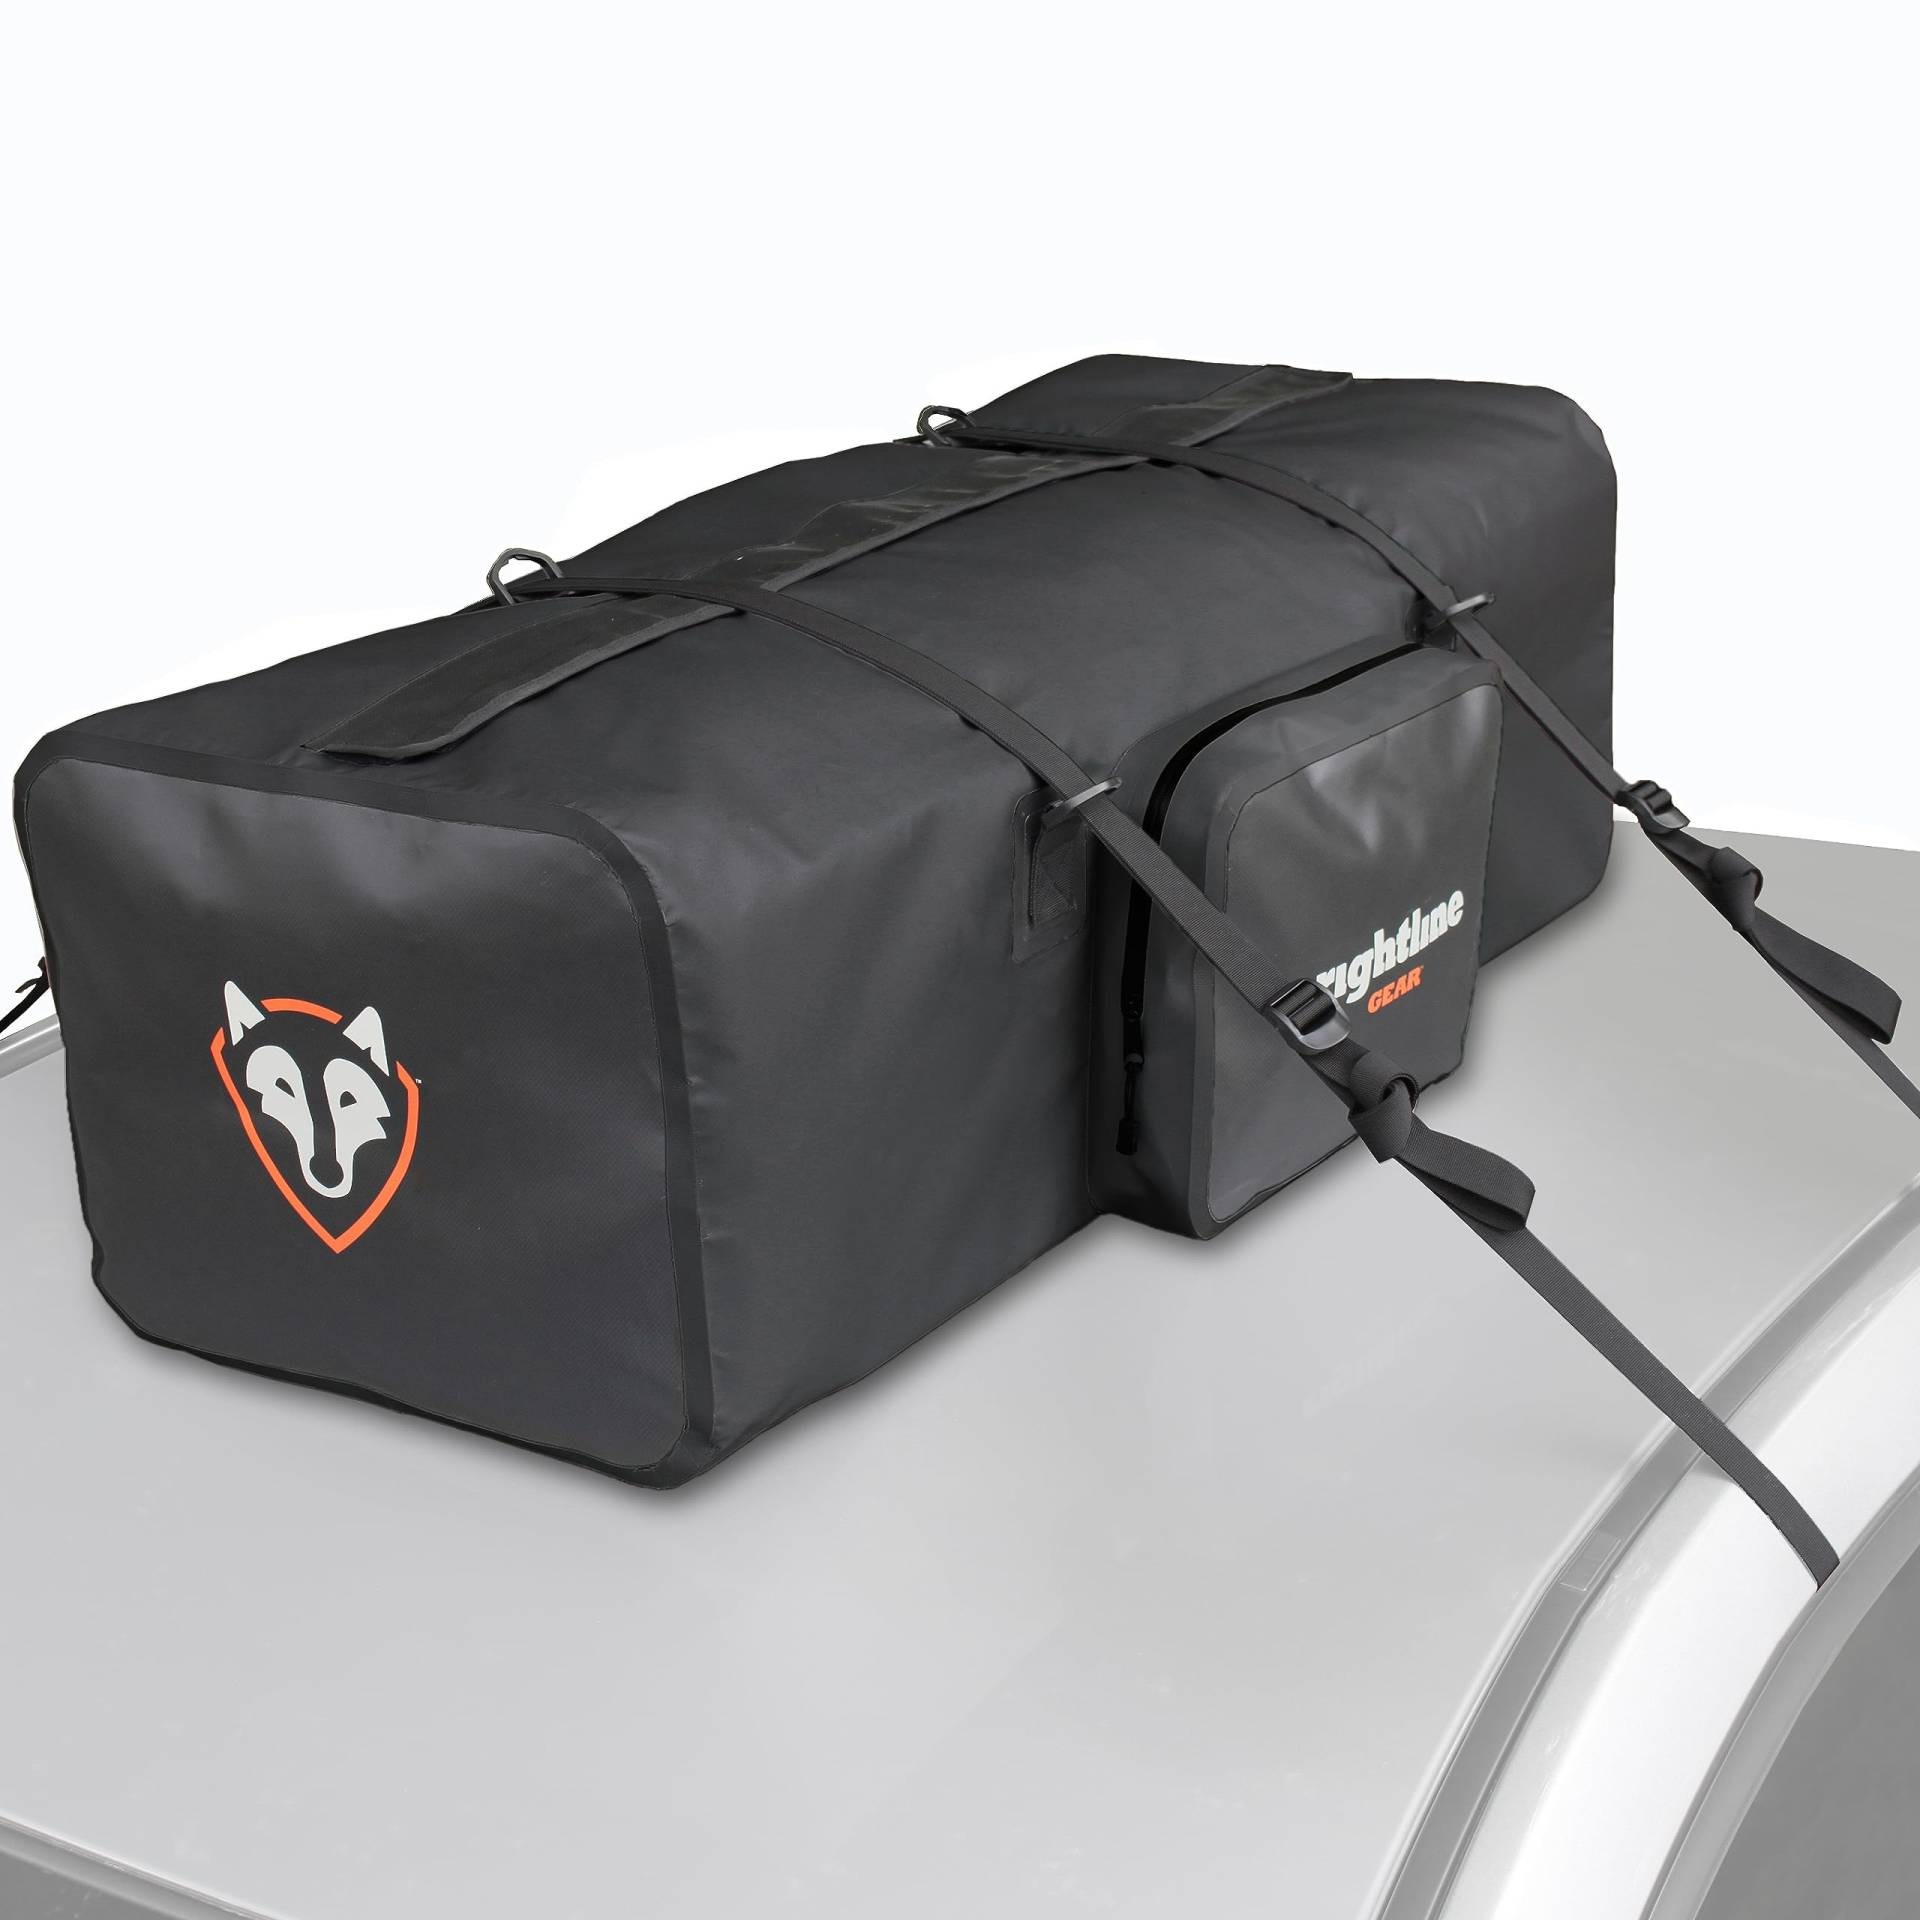 Rightline Gear Car Top wasserdichte Reisetasche für Reisen, mit oder ohne Dachträger, 120 Liter, Schwarz von Rightline Gear